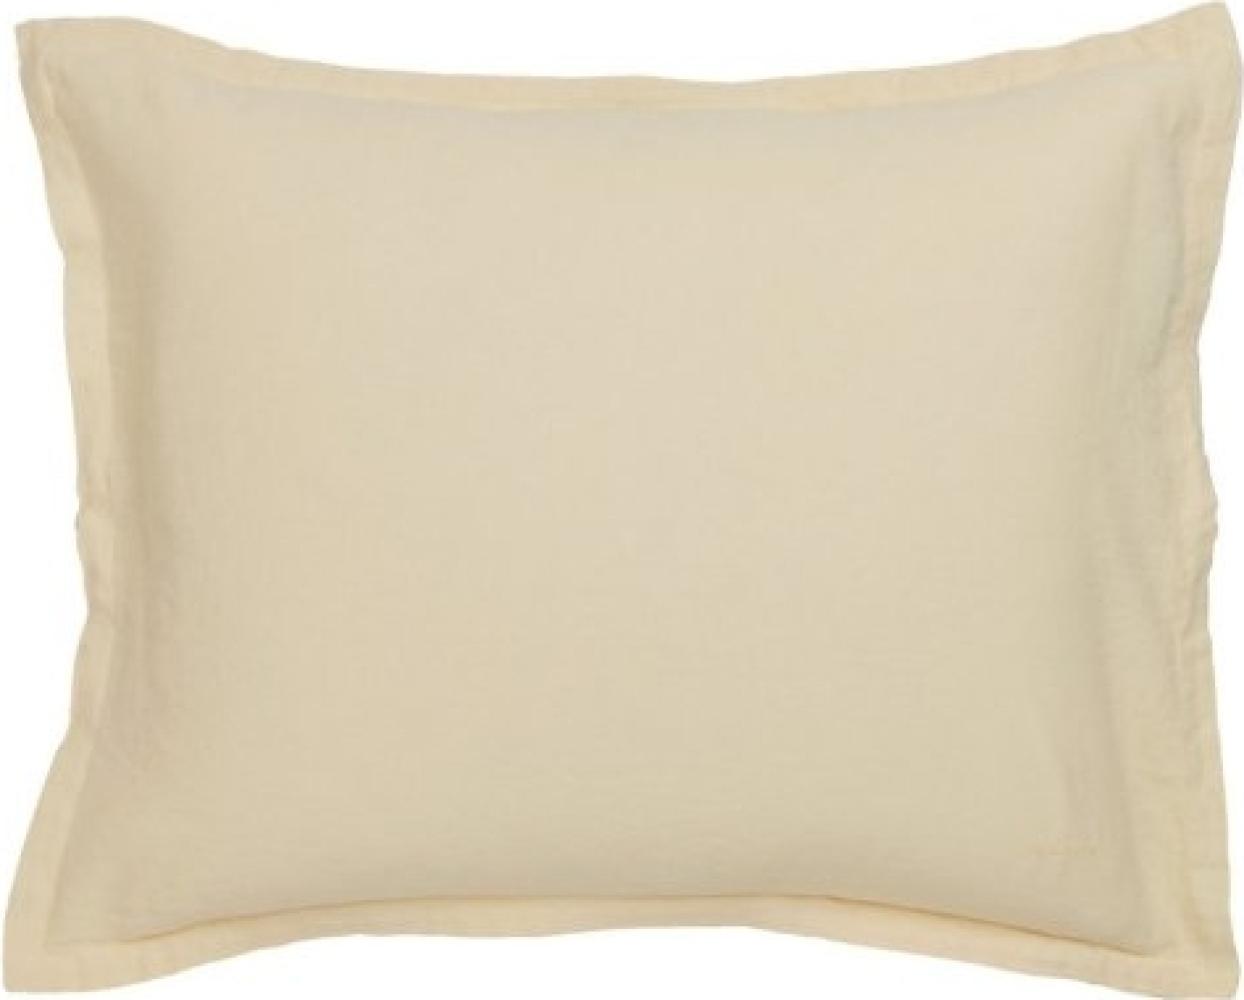 Gant Home Kopfkissenbezug Cotton Linen Butter Yellow (40x80cm) 851025901-717 Bild 1